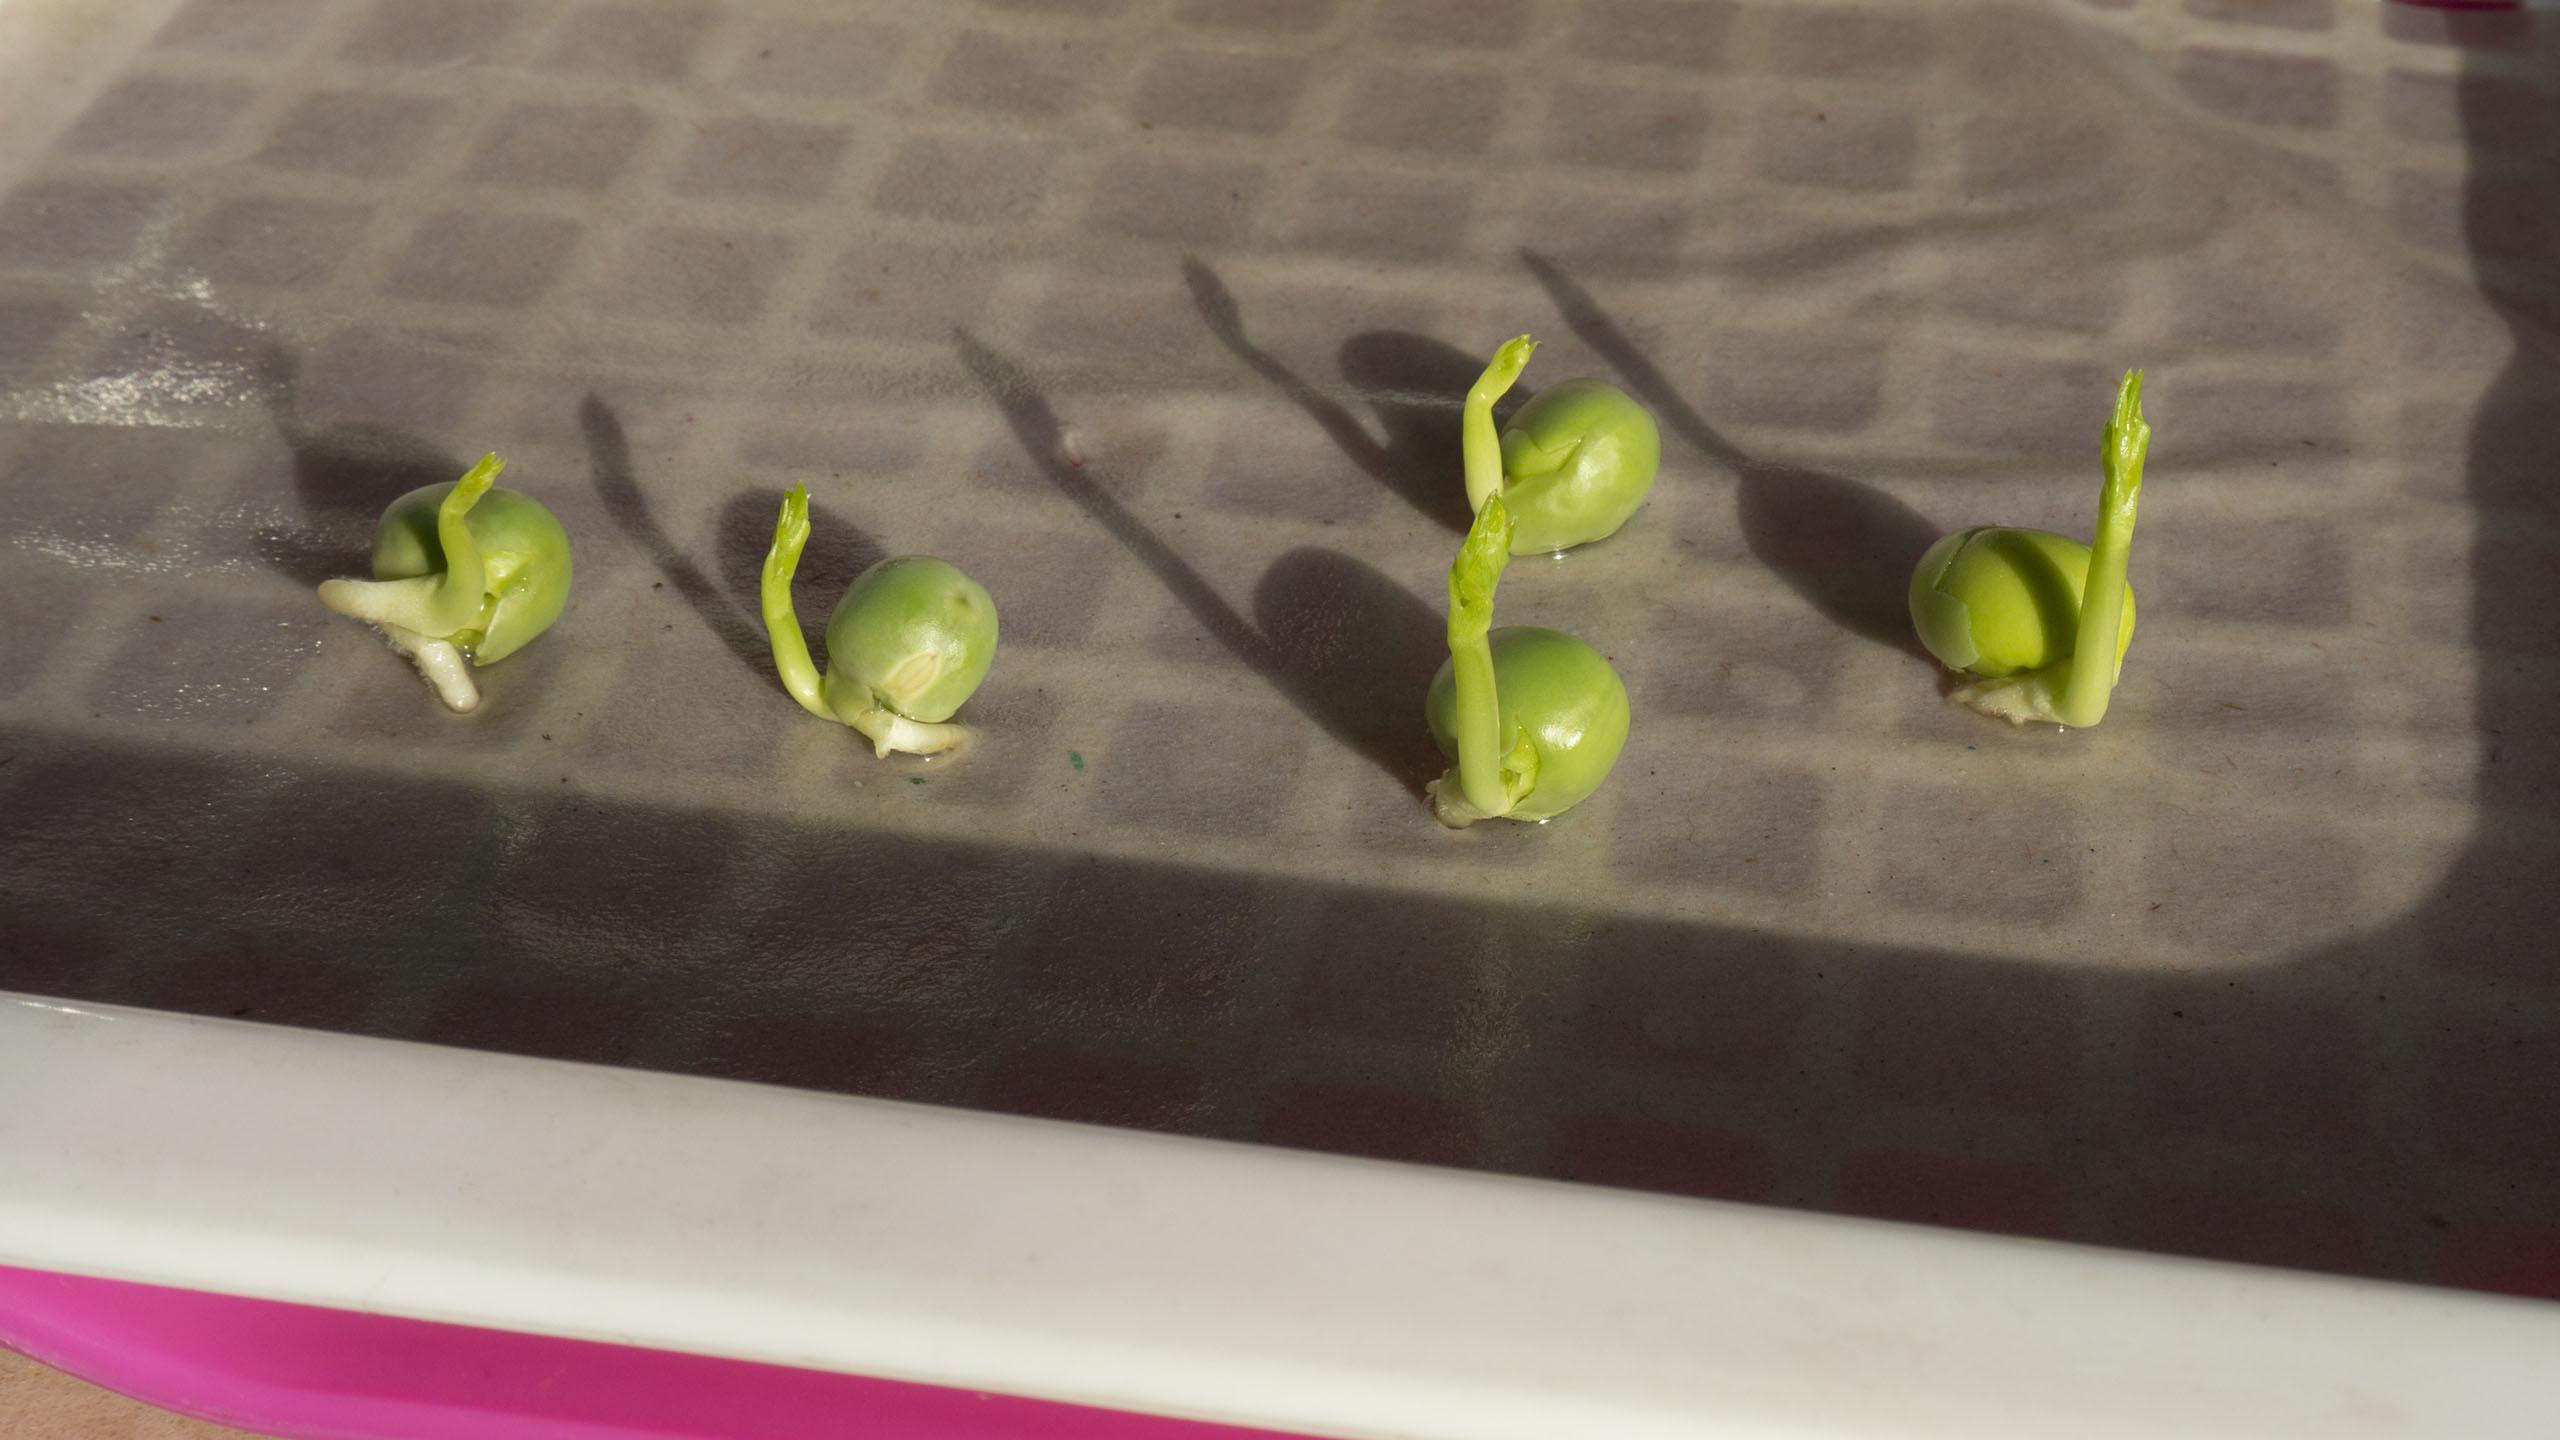 豌豆的生长过程图片-图库-五毛网